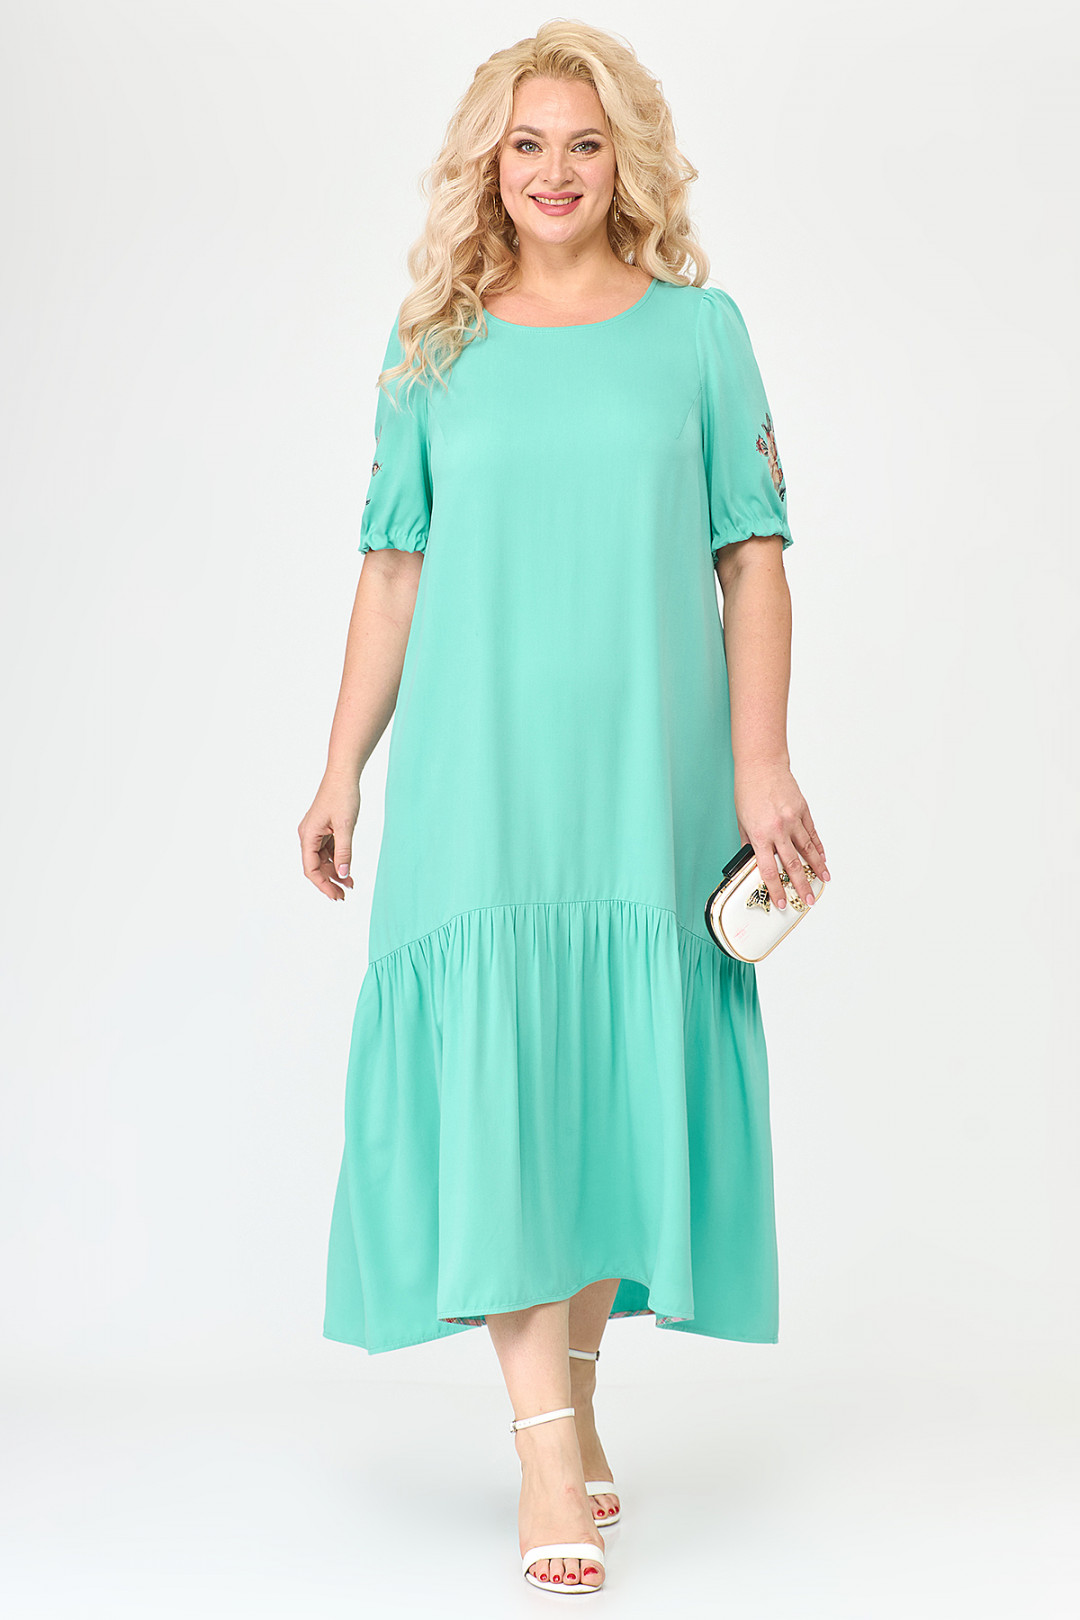 Платье ALGRANDA (Новелла Шарм) A3730-4-4-2